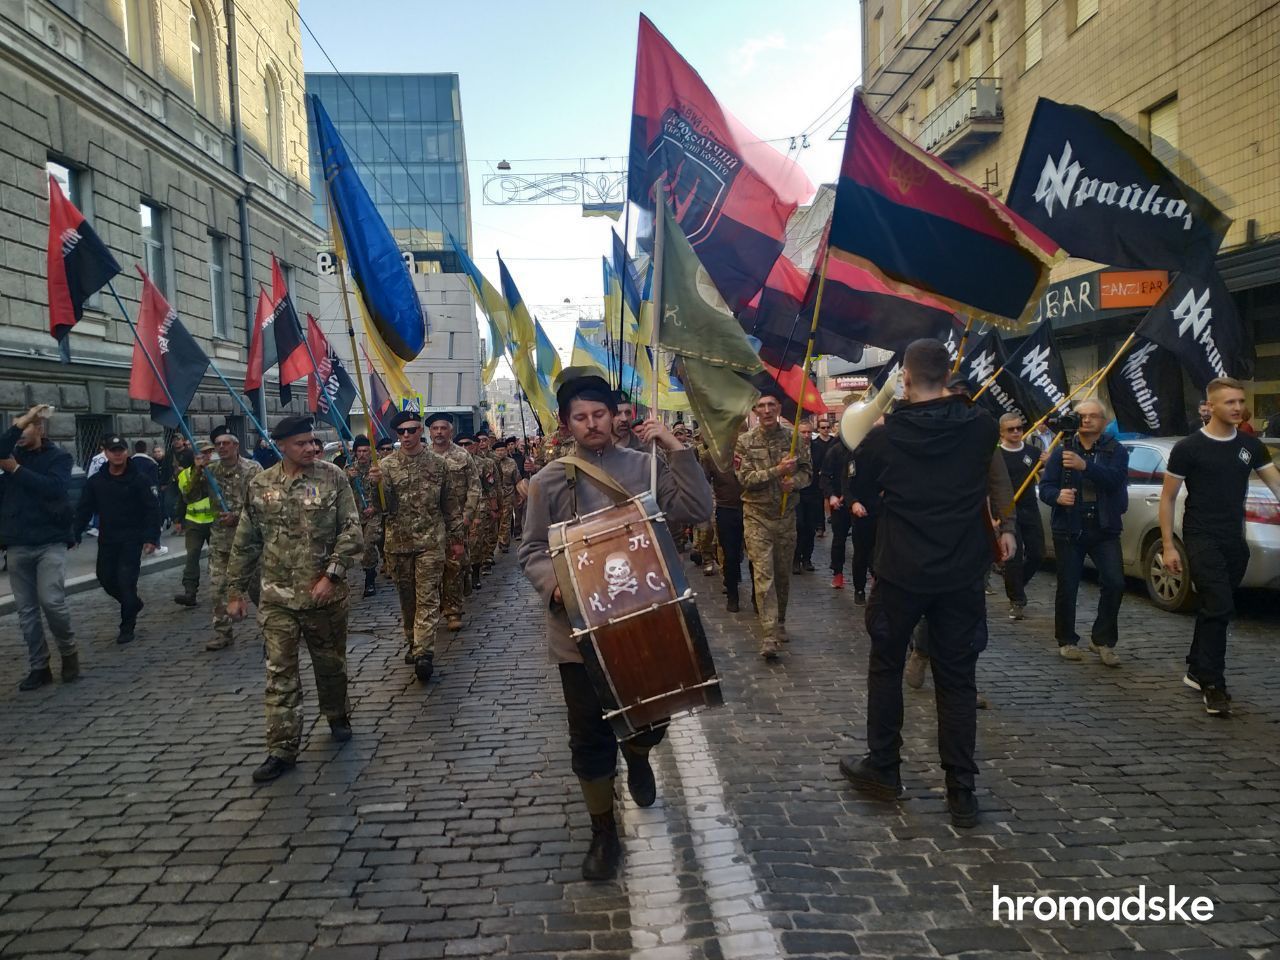 Марш ко Дню защитника 2020 в городах Украины: фото, видео